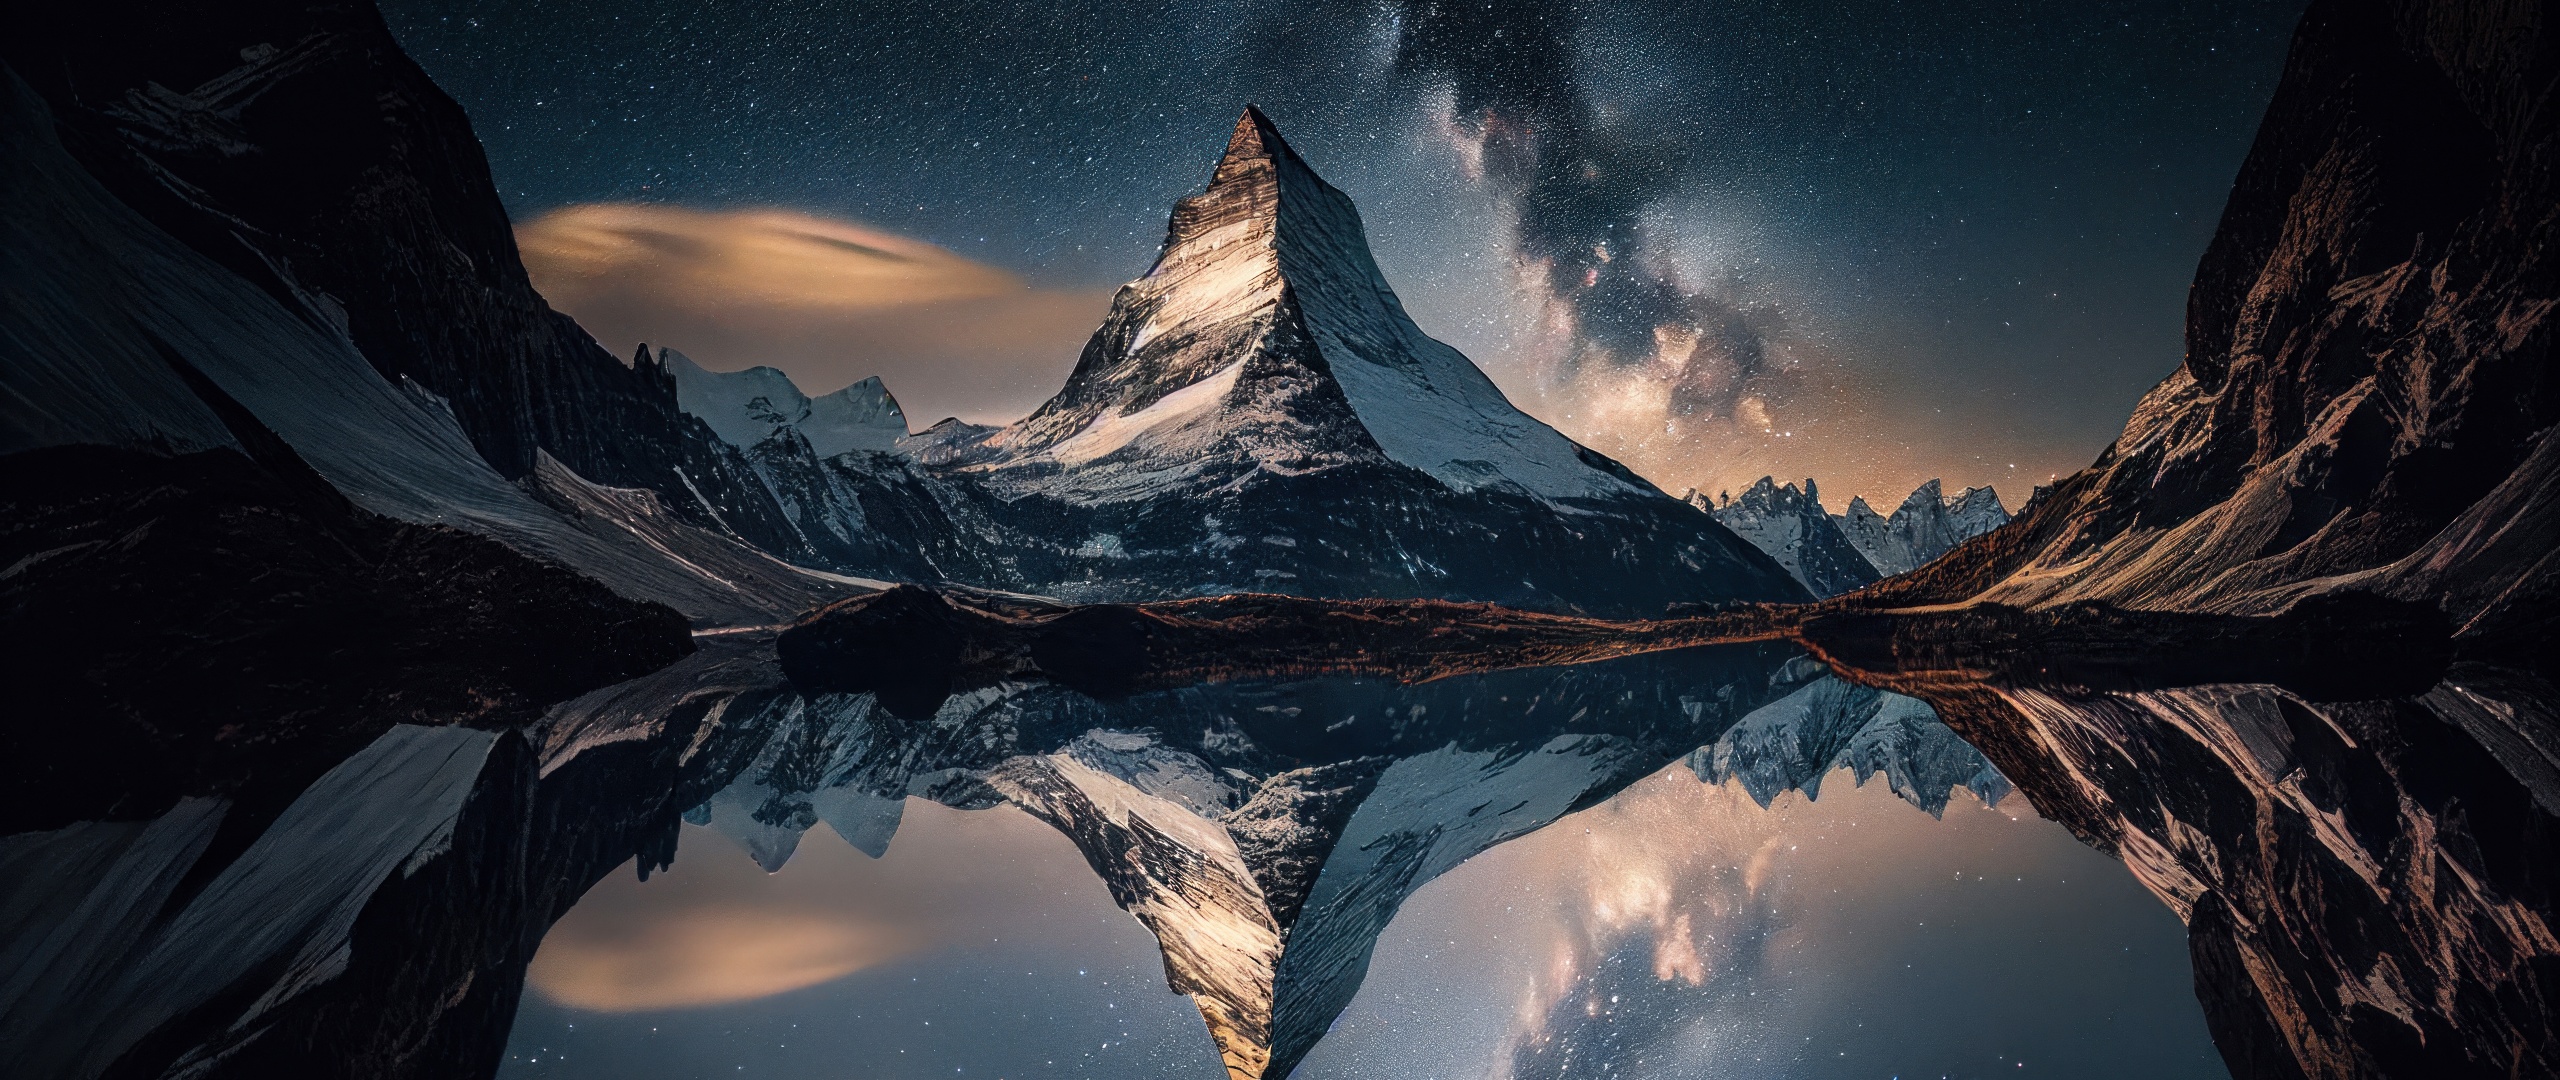 Обои 21 9 ultrawide. Гора Маттерхорн в Швейцарии. Швейцария Альпы озеро. ЭПИЧНЫЕ горы ночь.